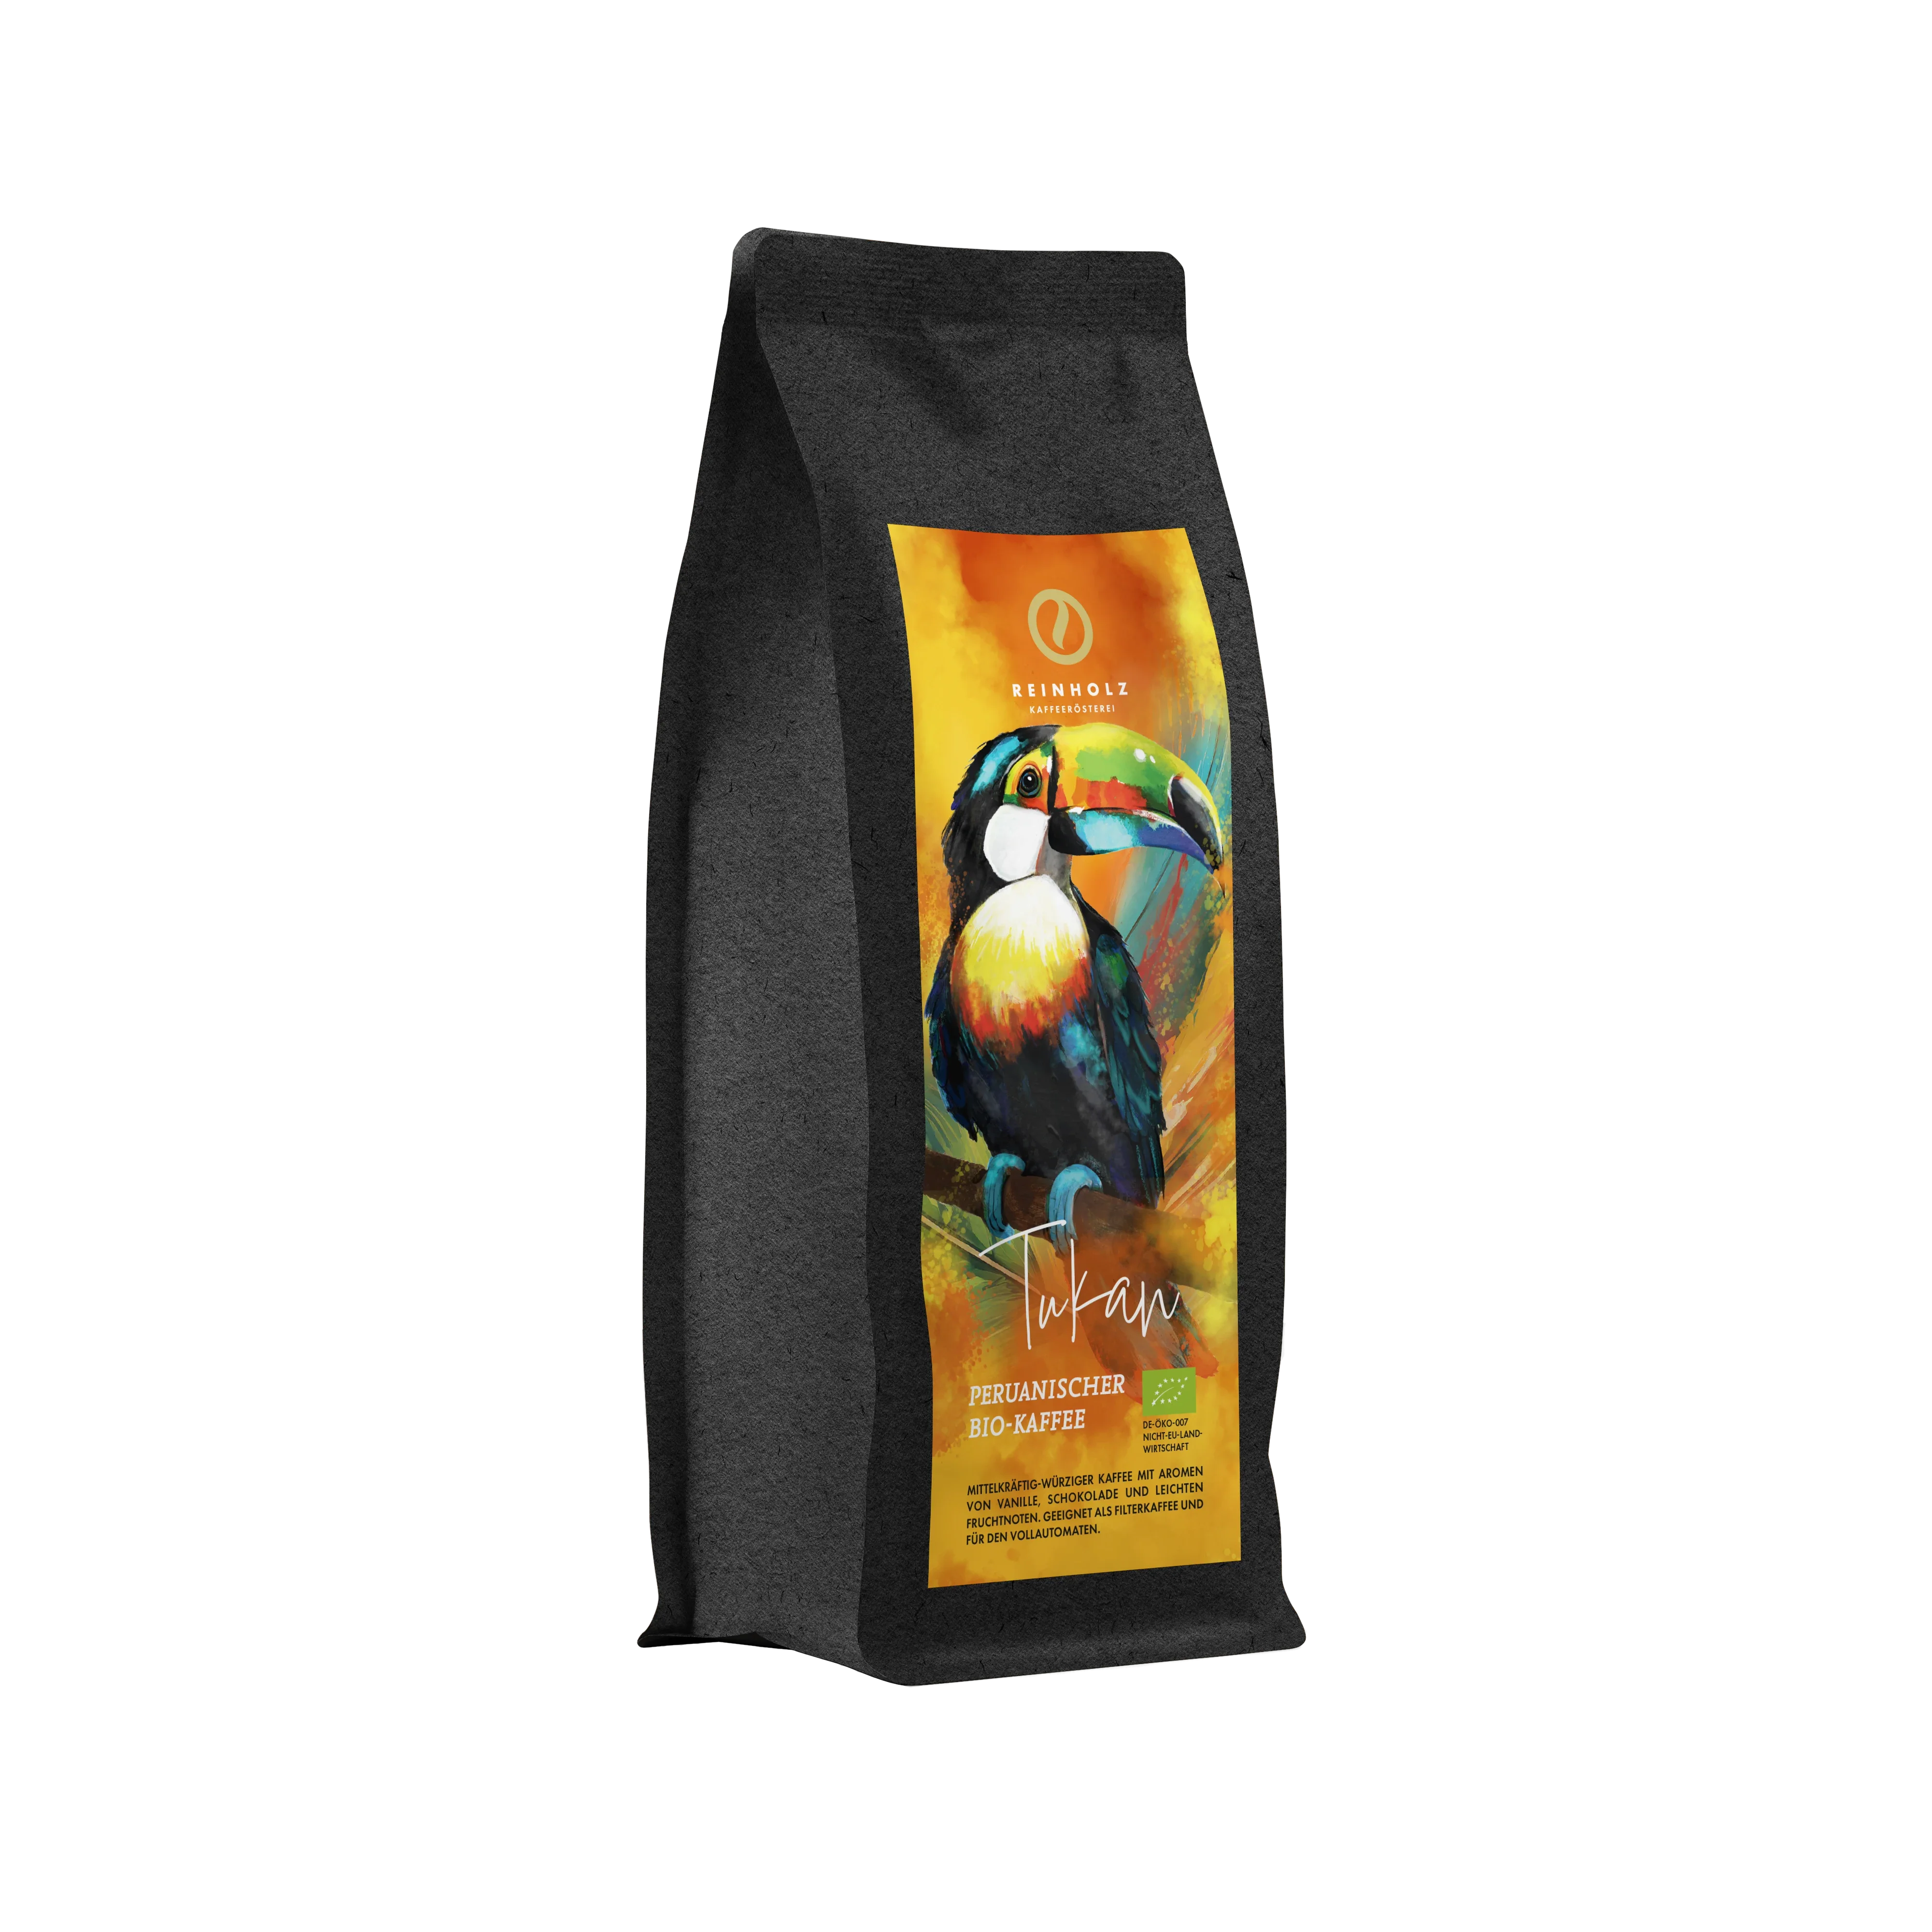 TUKAN Peruanischer Bio-Kaffee